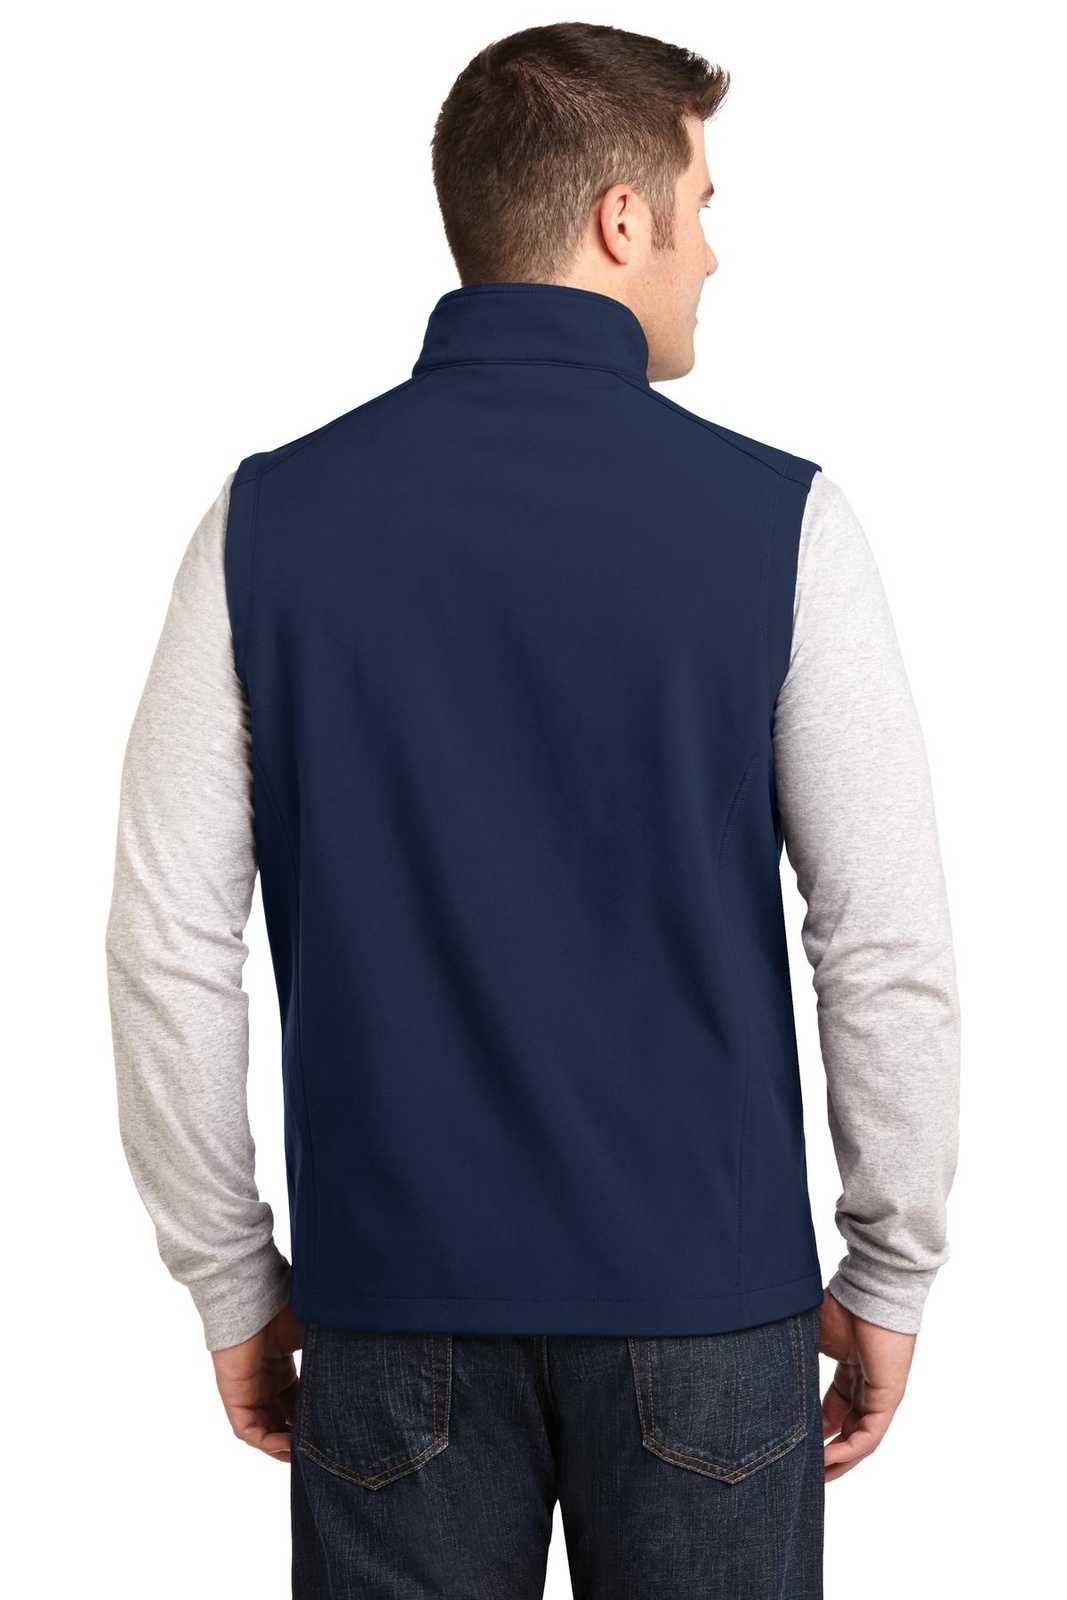 Port Authority J325 Core Soft Shell Vest - Dress Blue Navy - HIT a Double - 2